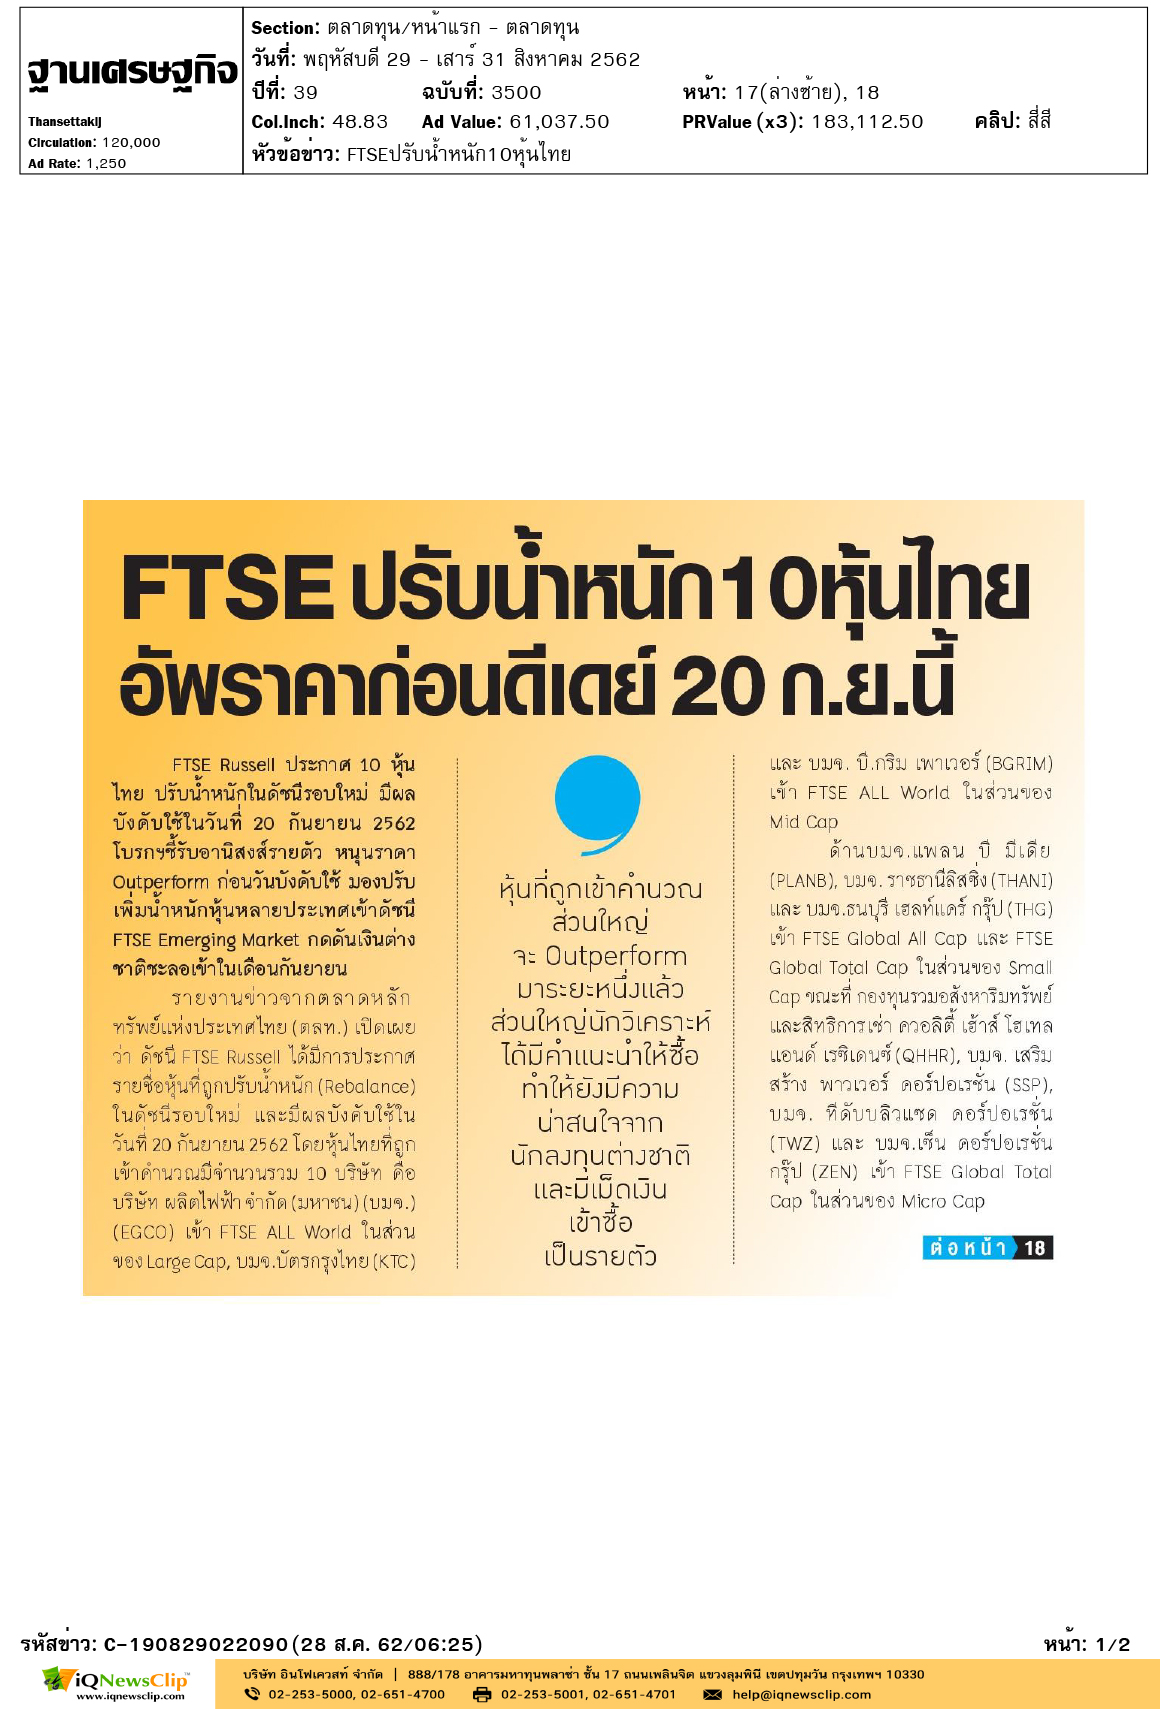 Other-ฐานเสรษฐกิจ---FTSEปรับน้ำหนัก10หุ้นไทย-1